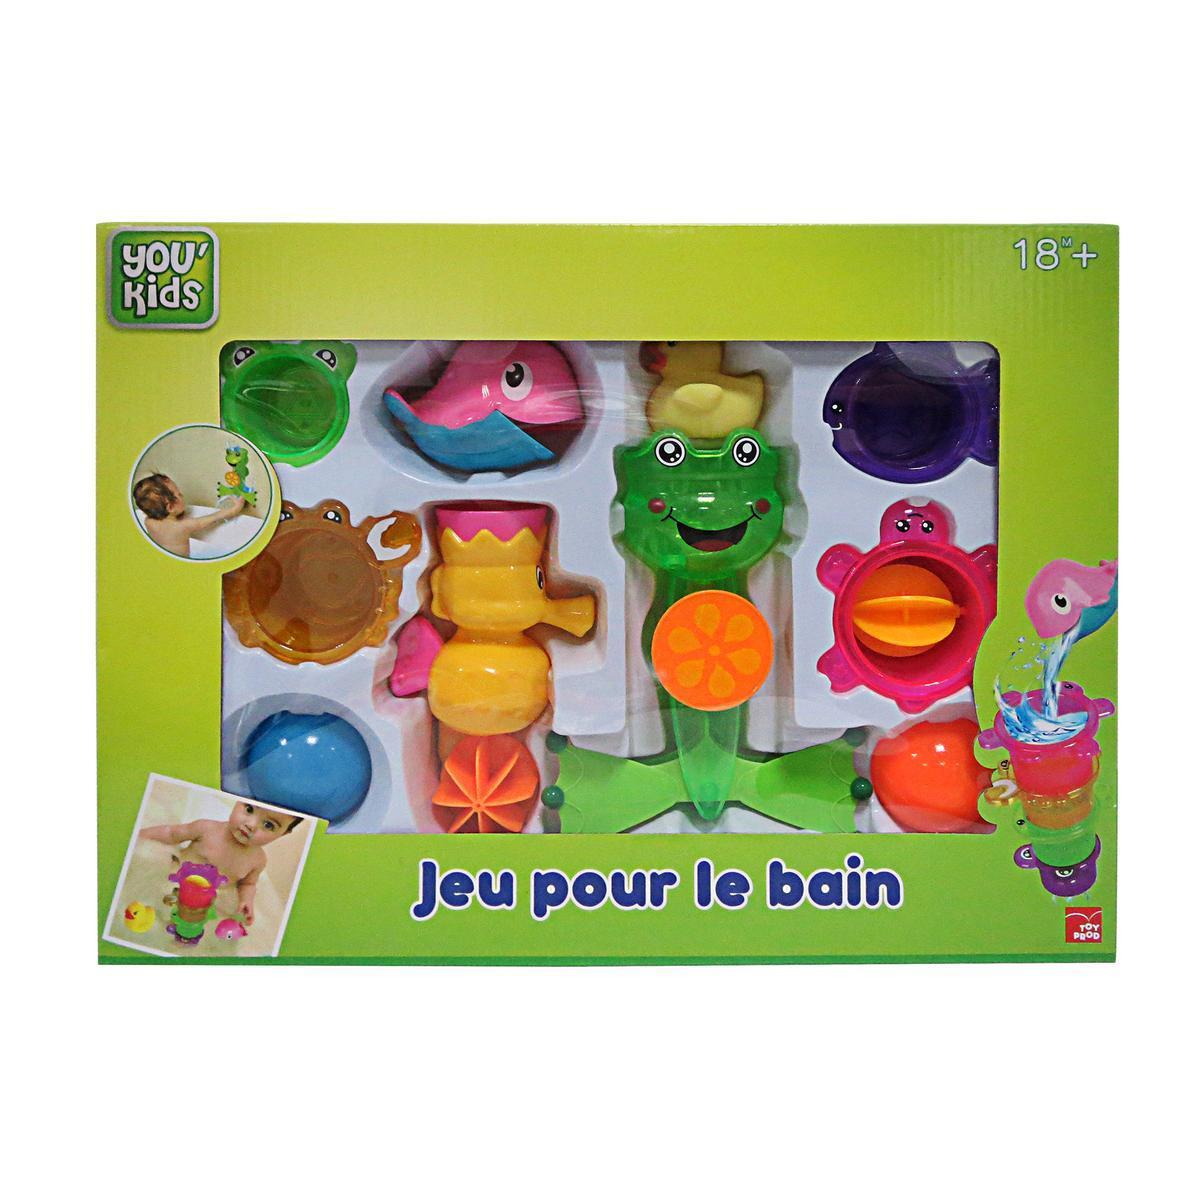 10 jouets pour le bain - Plastique - 42 x 31 x 17 cm - Multicolore